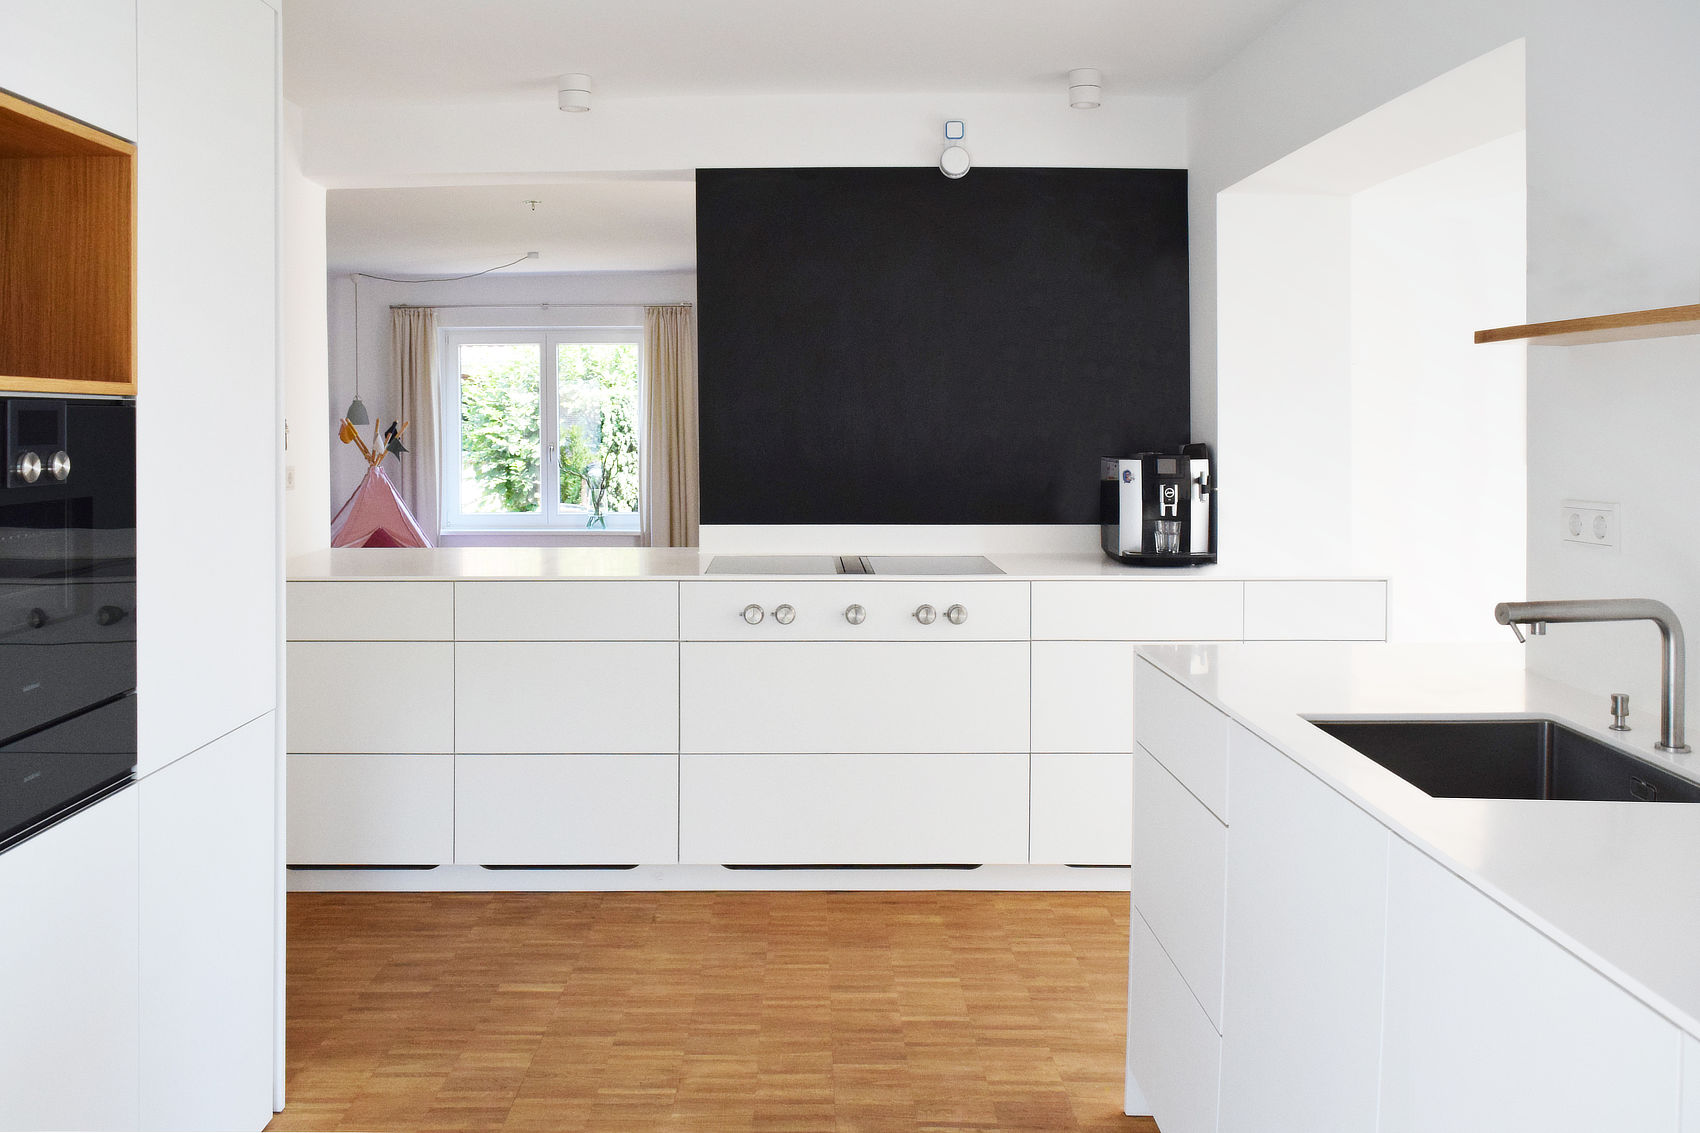 Die Küchenzeilen sind homogen weiß gestaltet mit wenigen Kontrasten in Eichenholz und einer beschreibbaren Wandfläche.